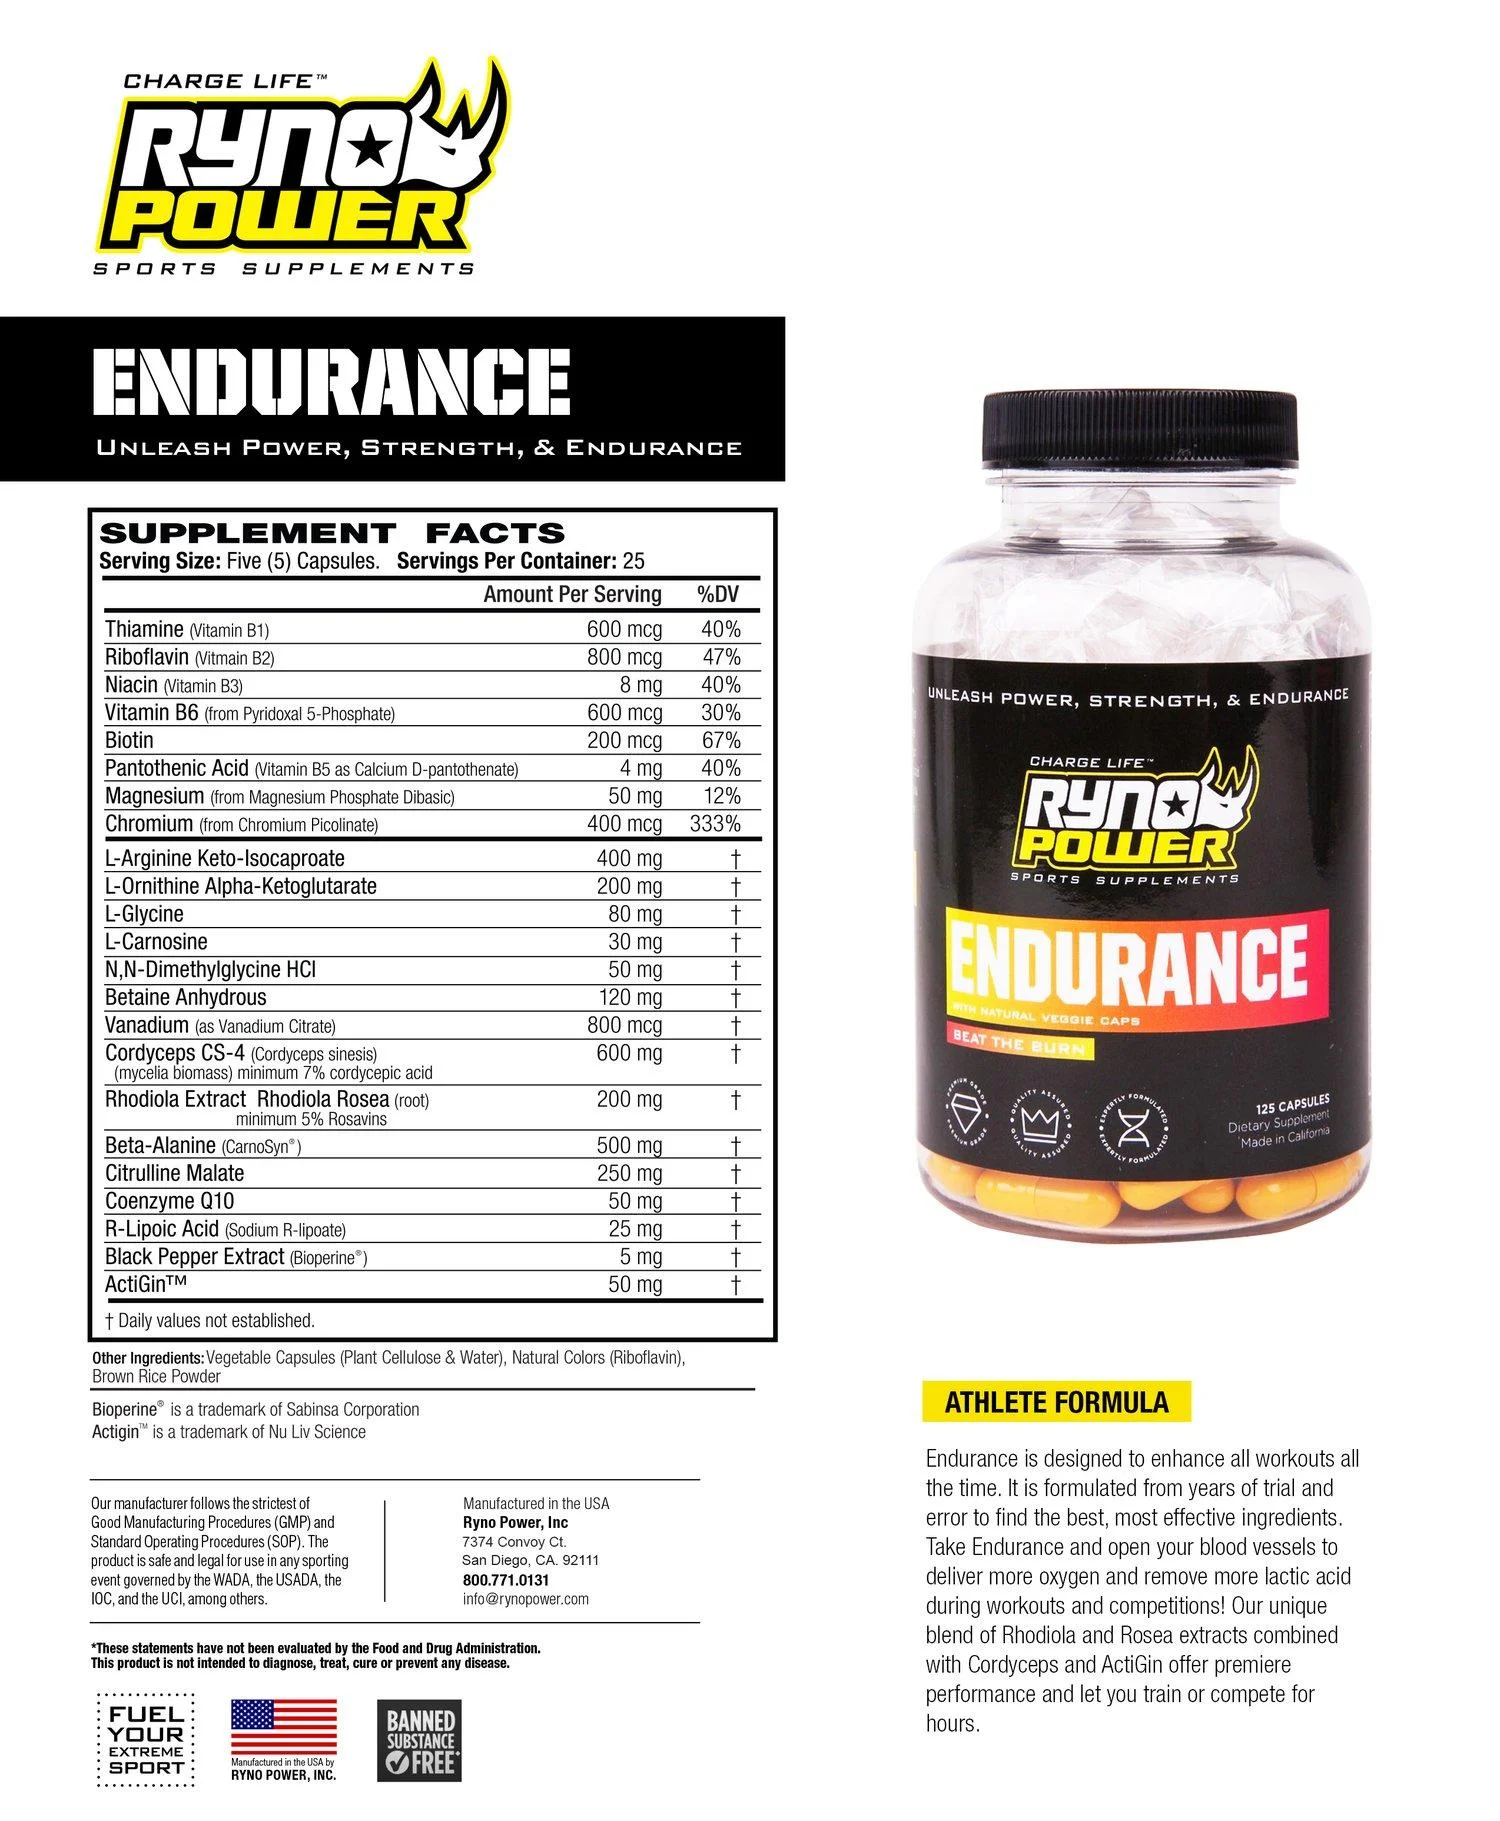 newrynopower-supplementfacts-endurance-1500x.webp